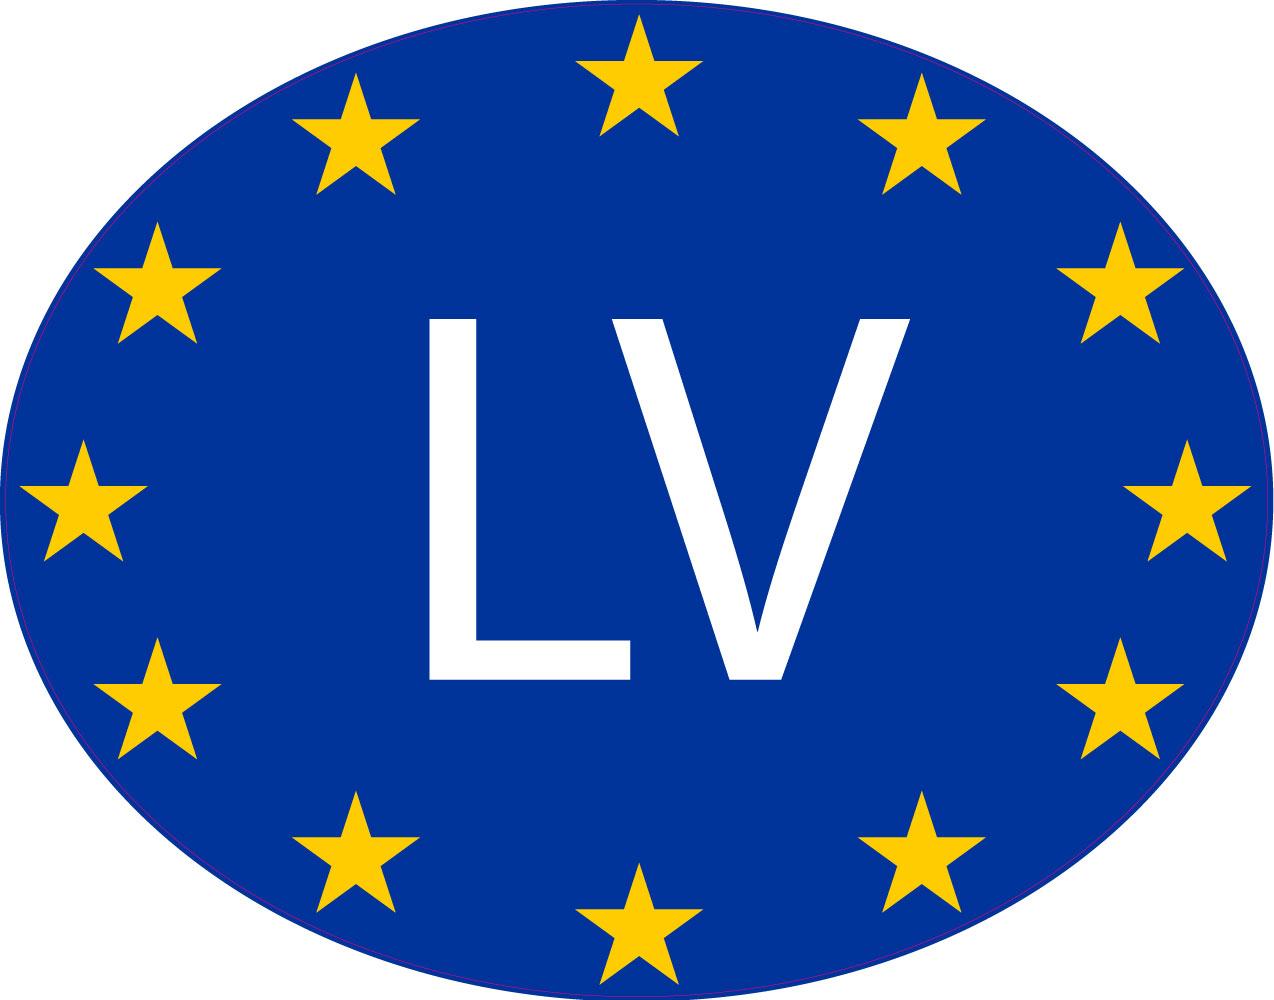 Autocollant sticker drapeau oval code pays voiture moto lettonie letton lv 